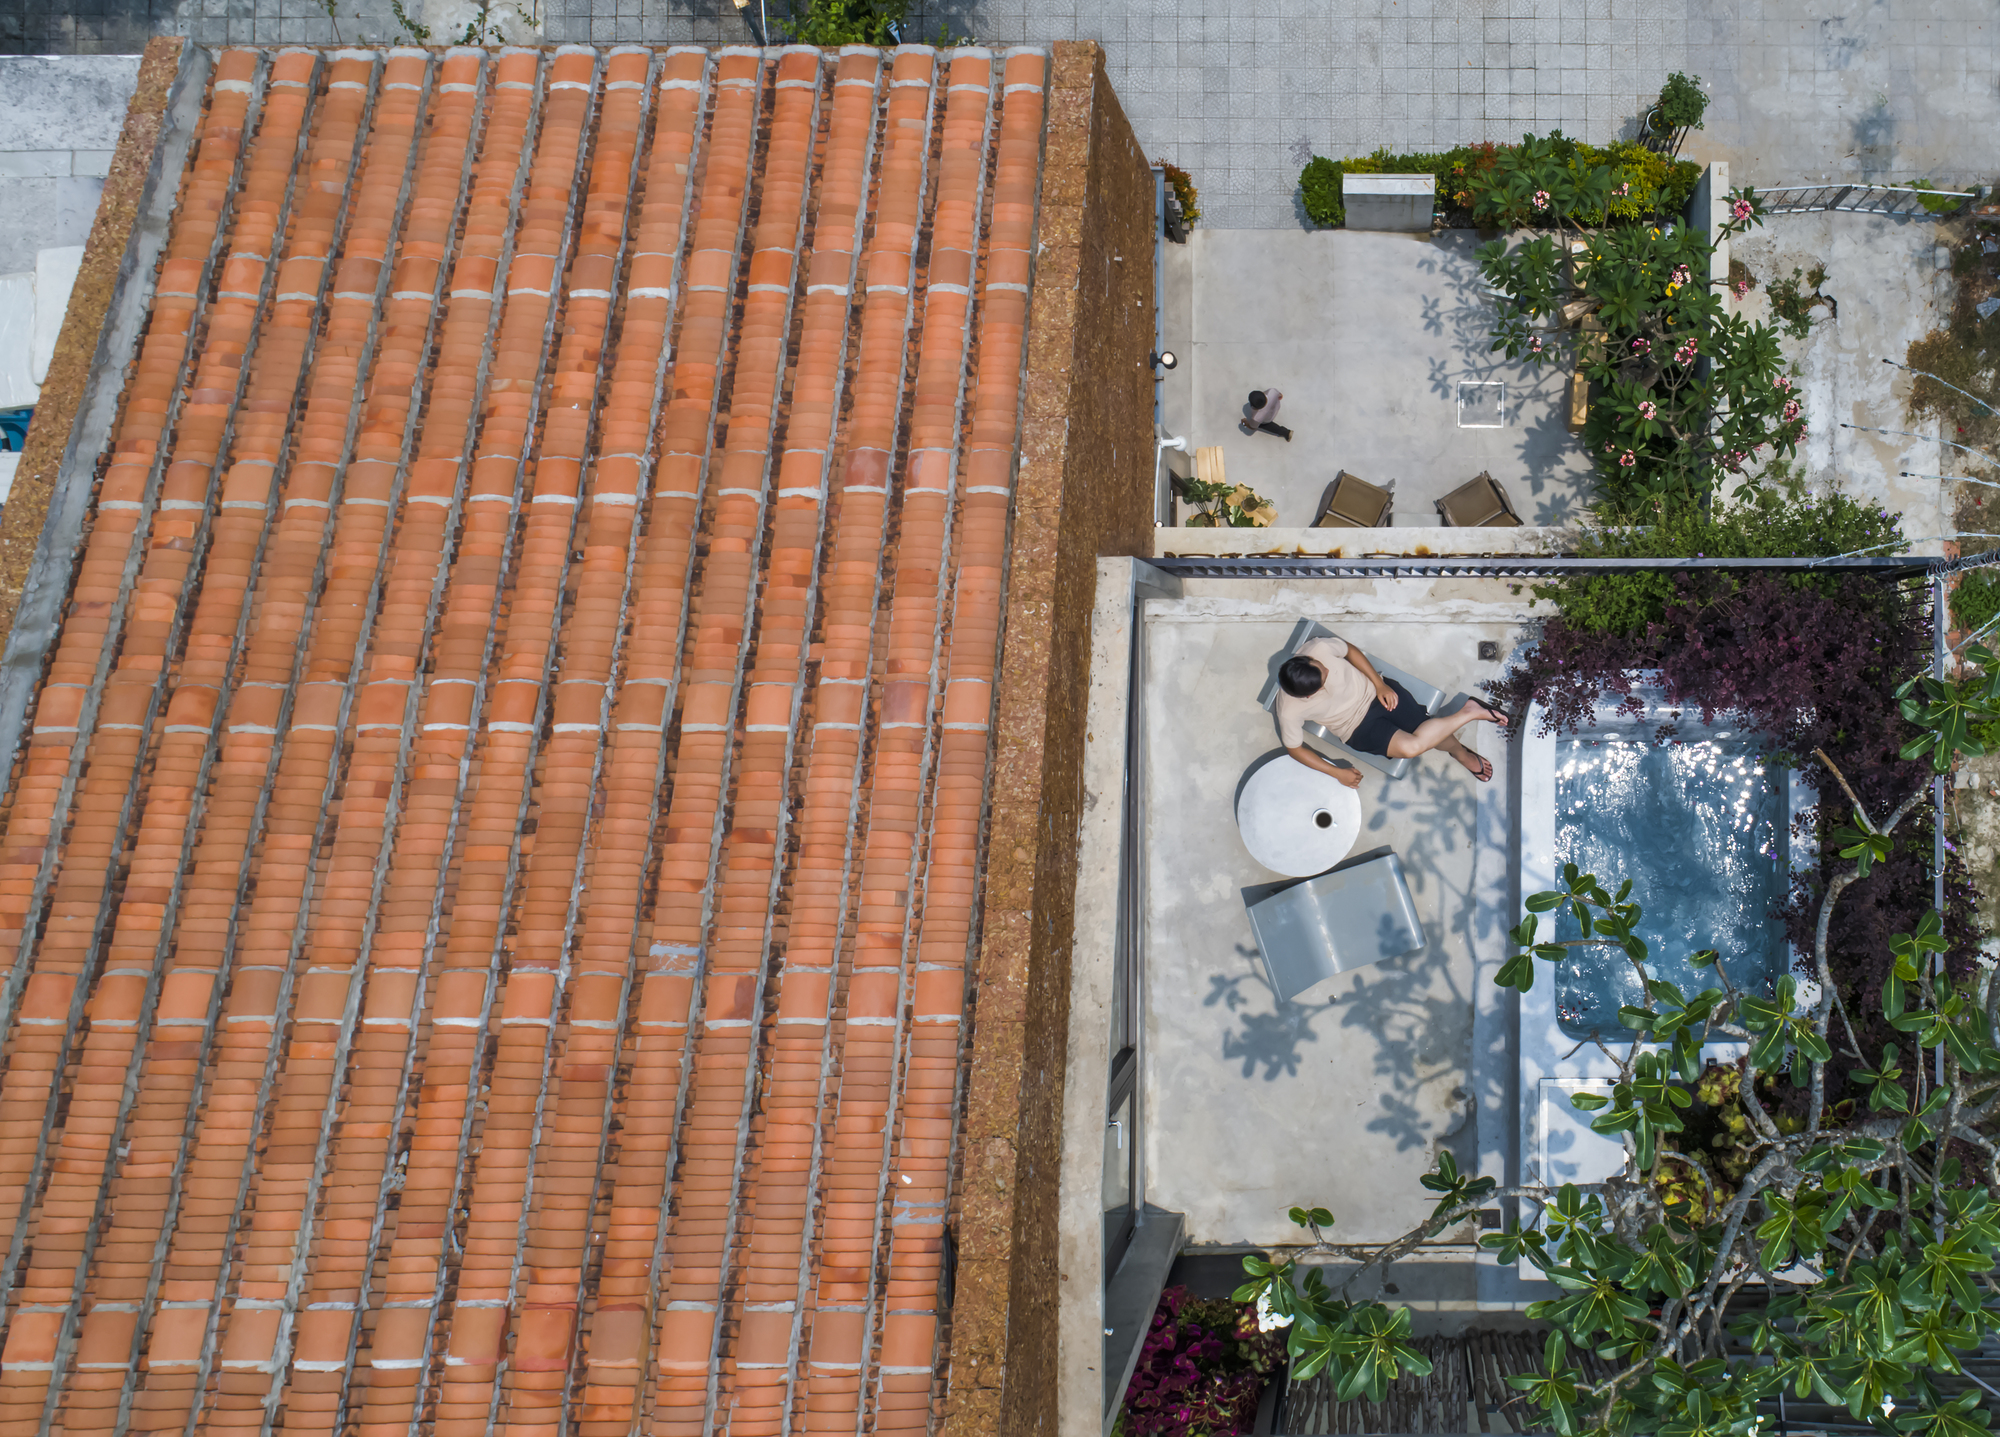 图片[9]|渔网连接悬浮水泥盒，Thalia 精品酒店 / Ho Khue Architects|ART-Arrakis | 建筑室内设计的创新与灵感